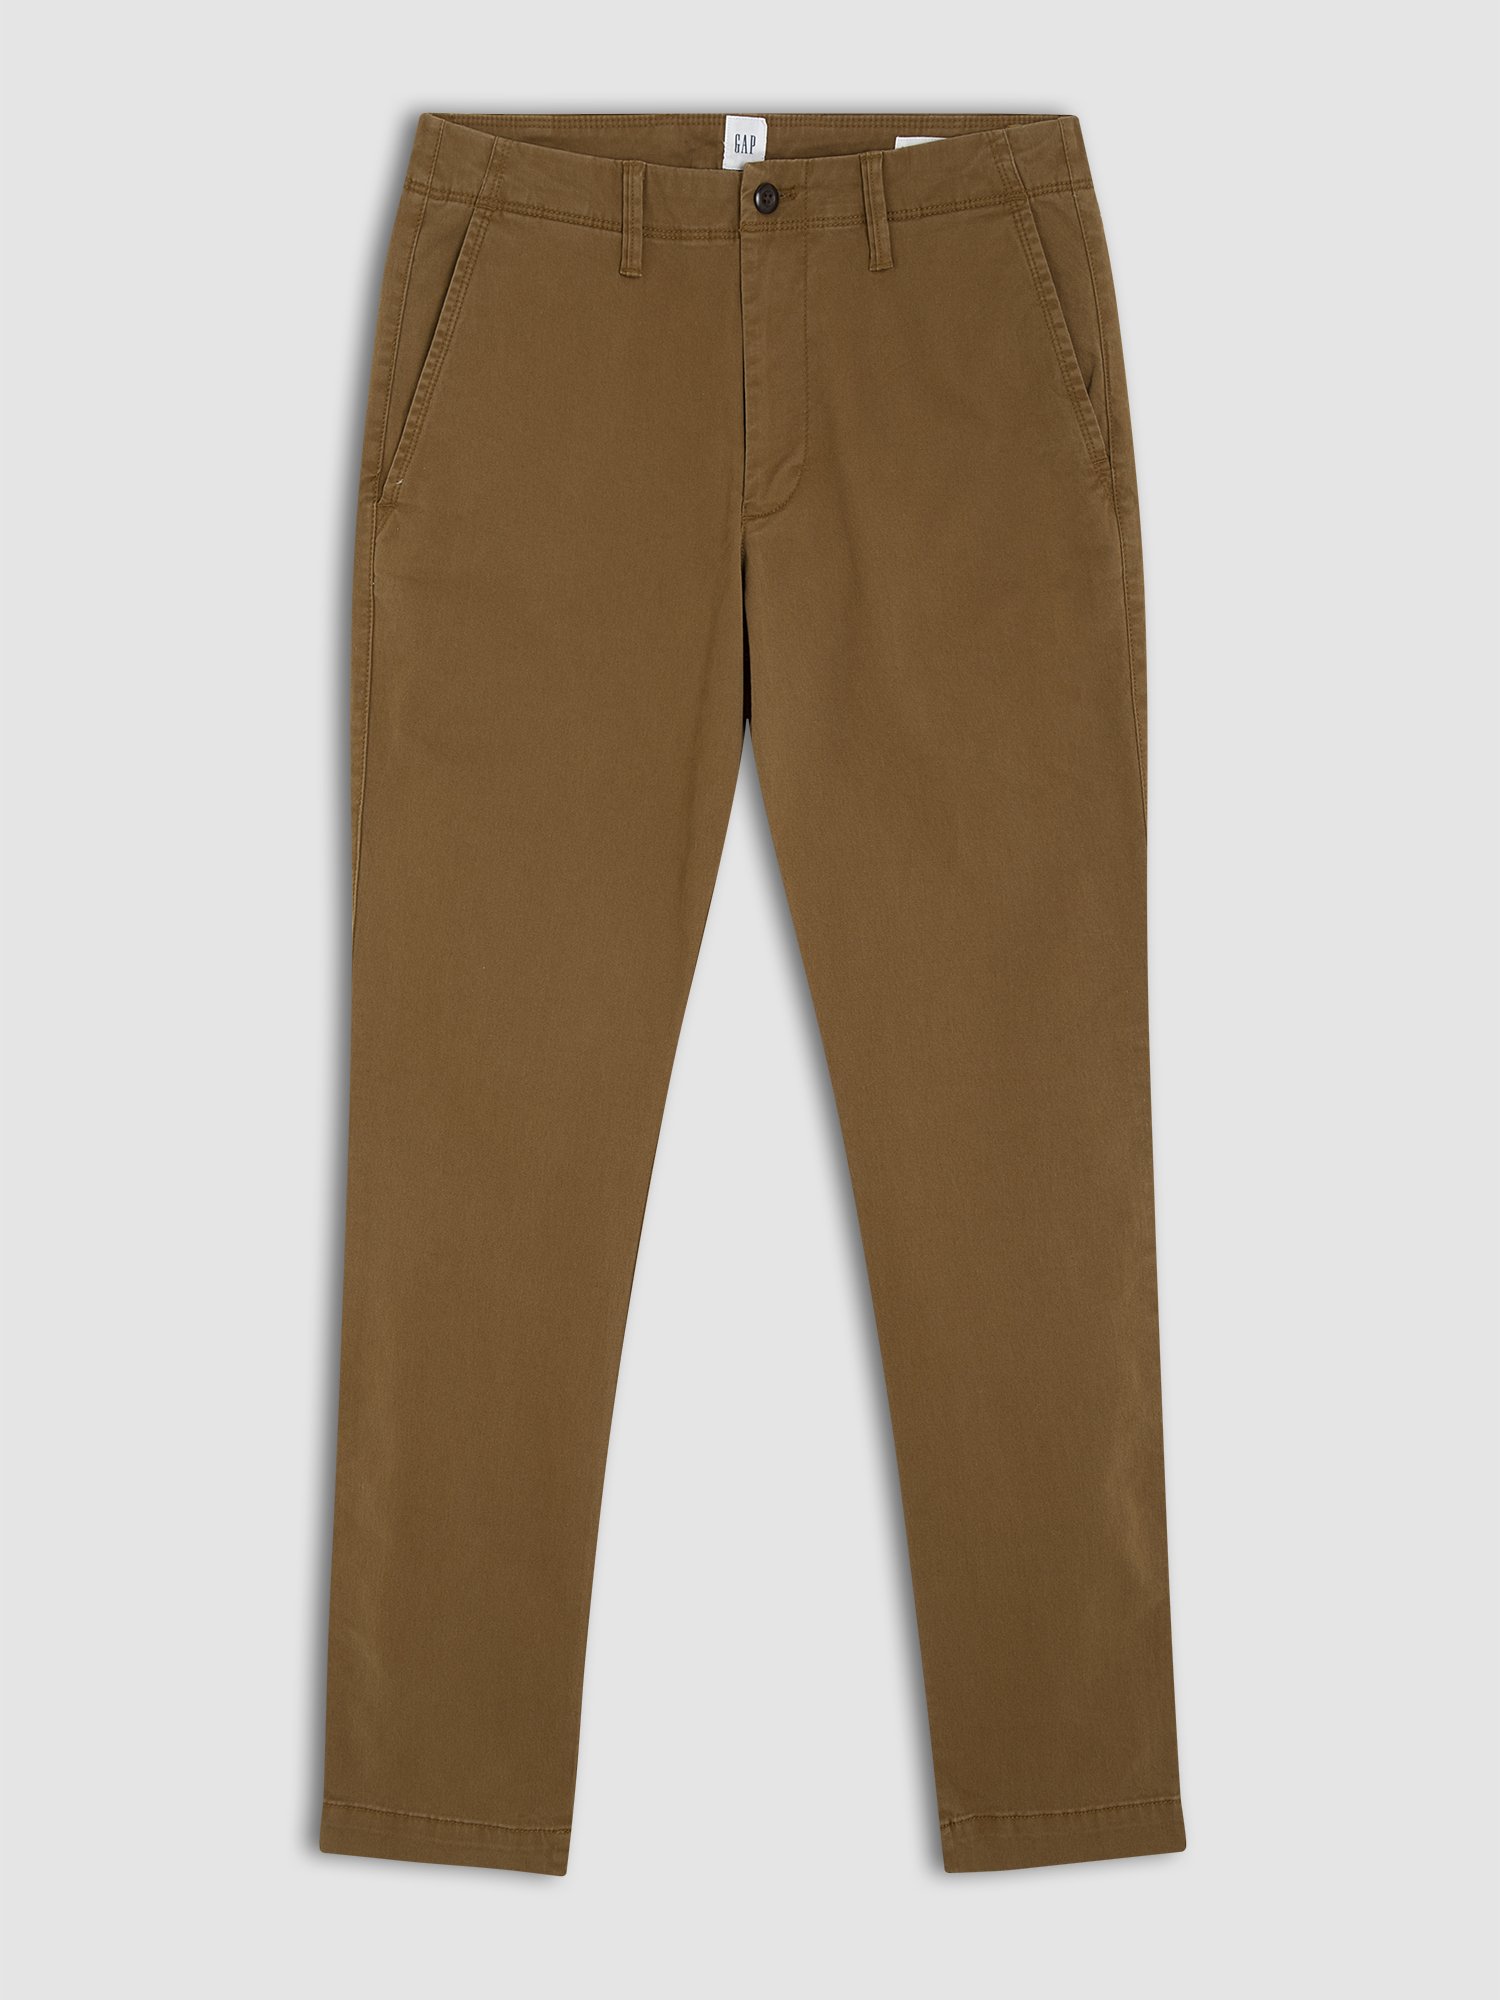 Skinny Khaki Pantolon product image